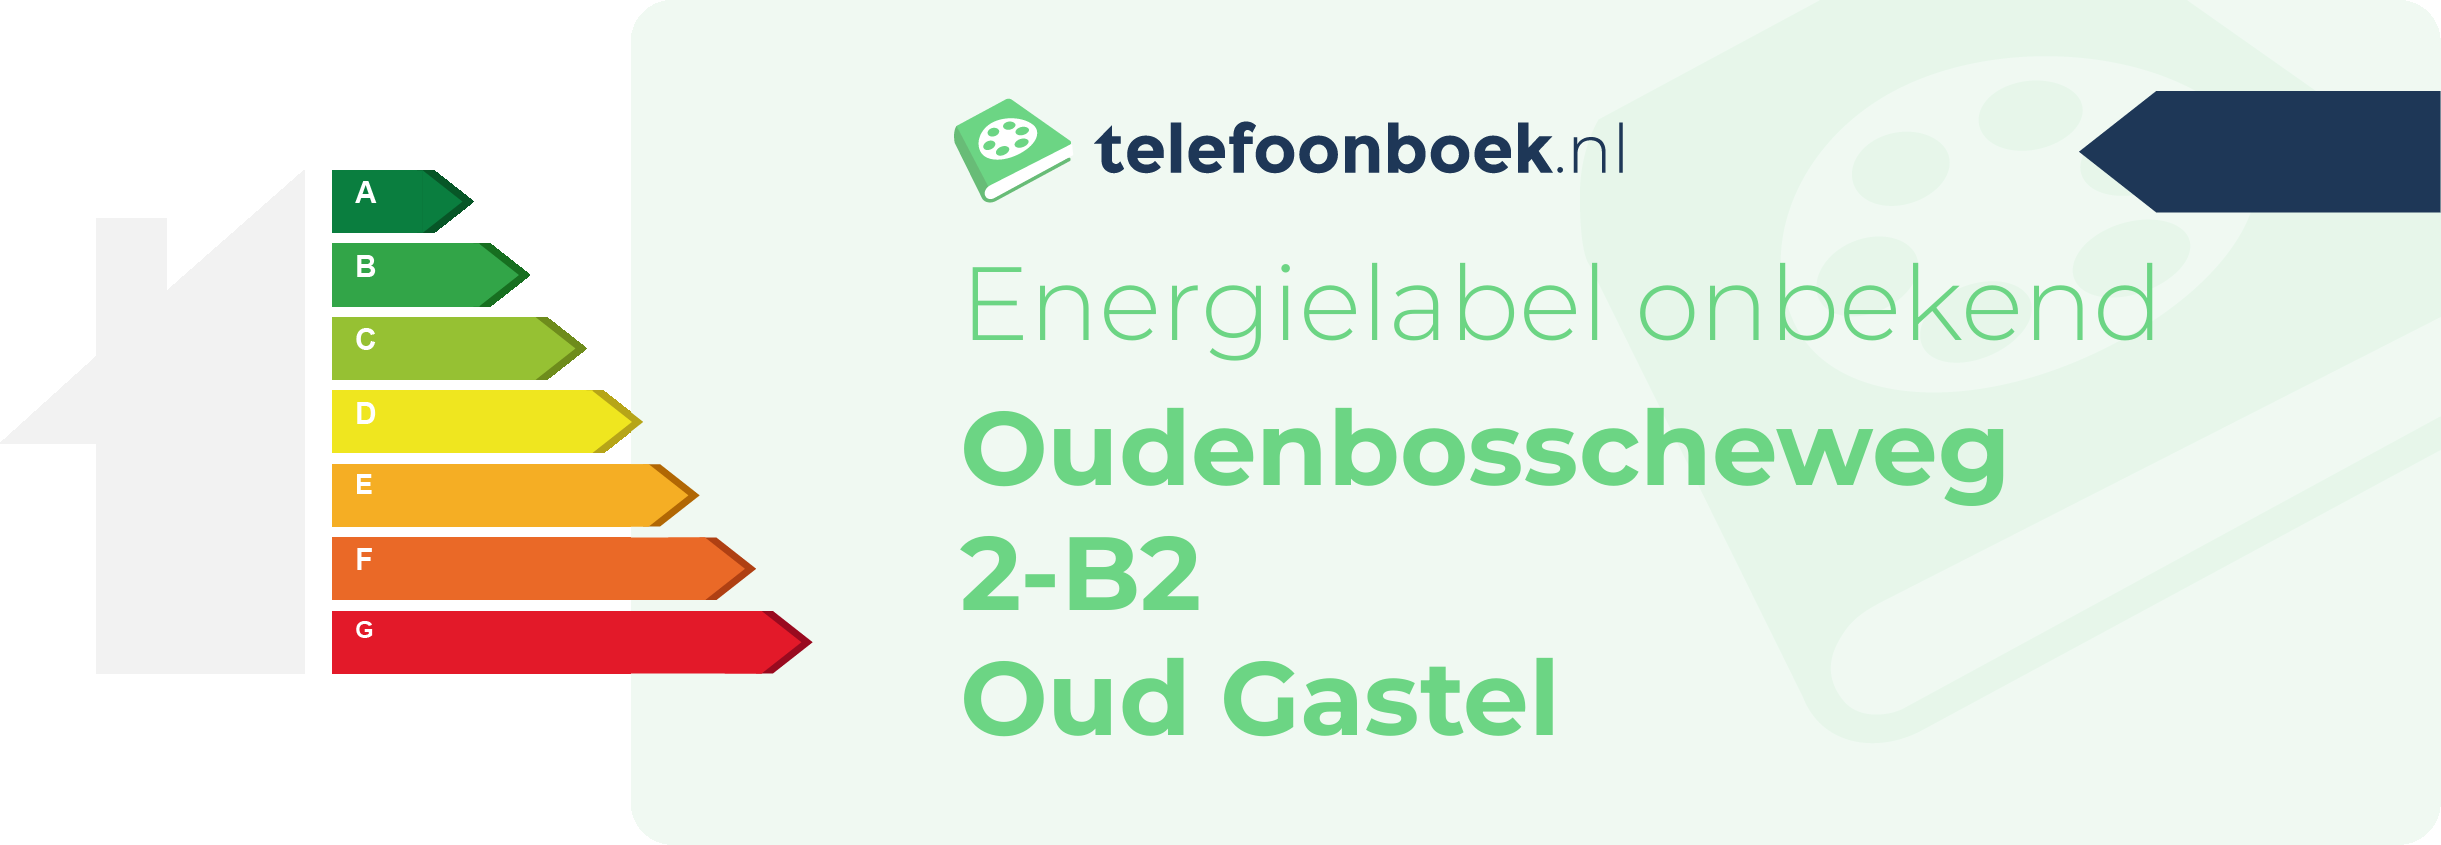 Energielabel Oudenbosscheweg 2-B2 Oud Gastel